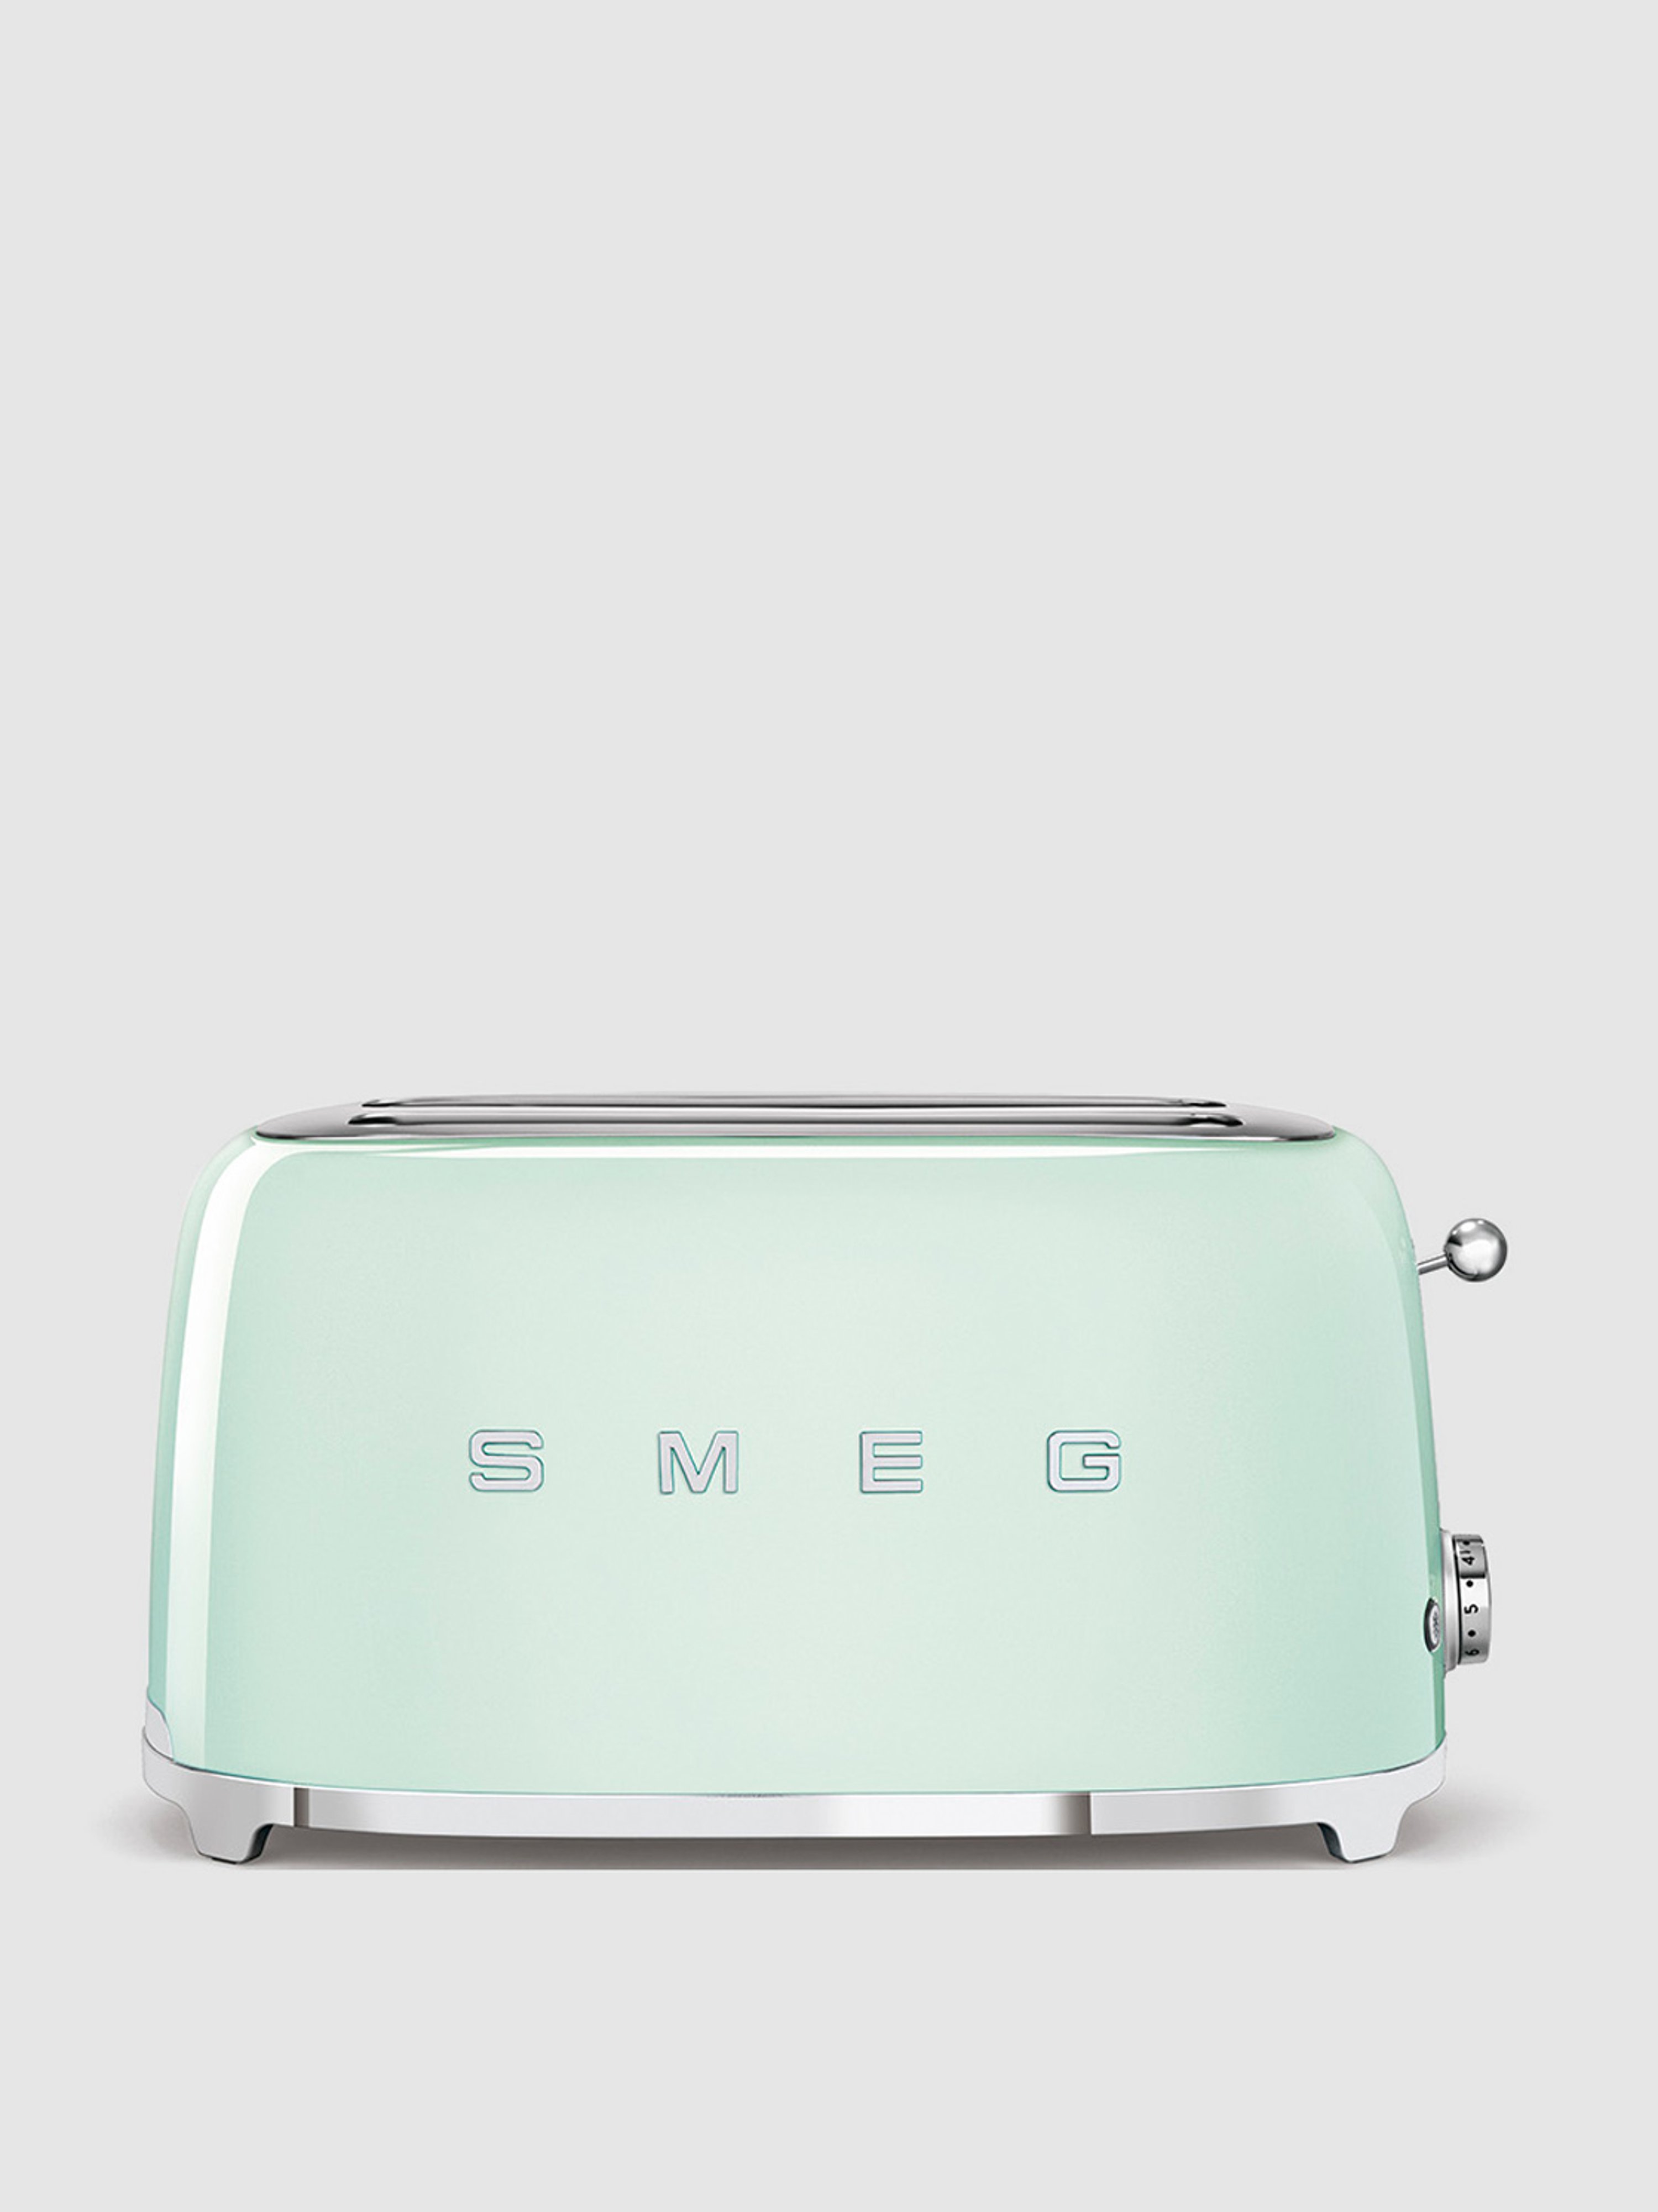 Smeg 4-slice Toaster